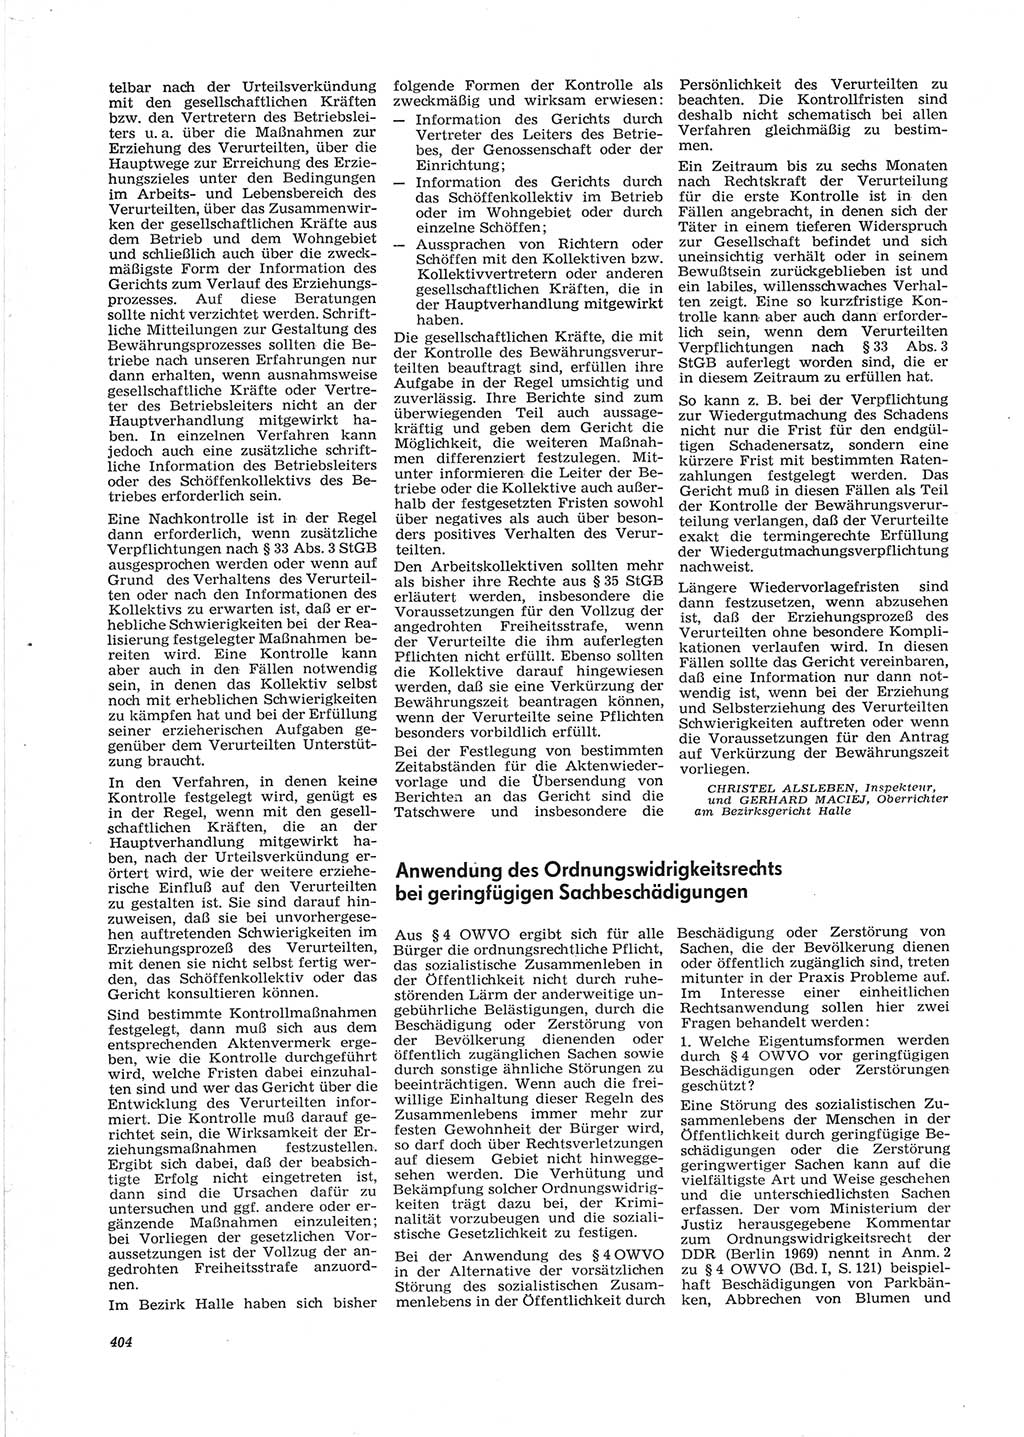 Neue Justiz (NJ), Zeitschrift für Recht und Rechtswissenschaft [Deutsche Demokratische Republik (DDR)], 28. Jahrgang 1974, Seite 404 (NJ DDR 1974, S. 404)